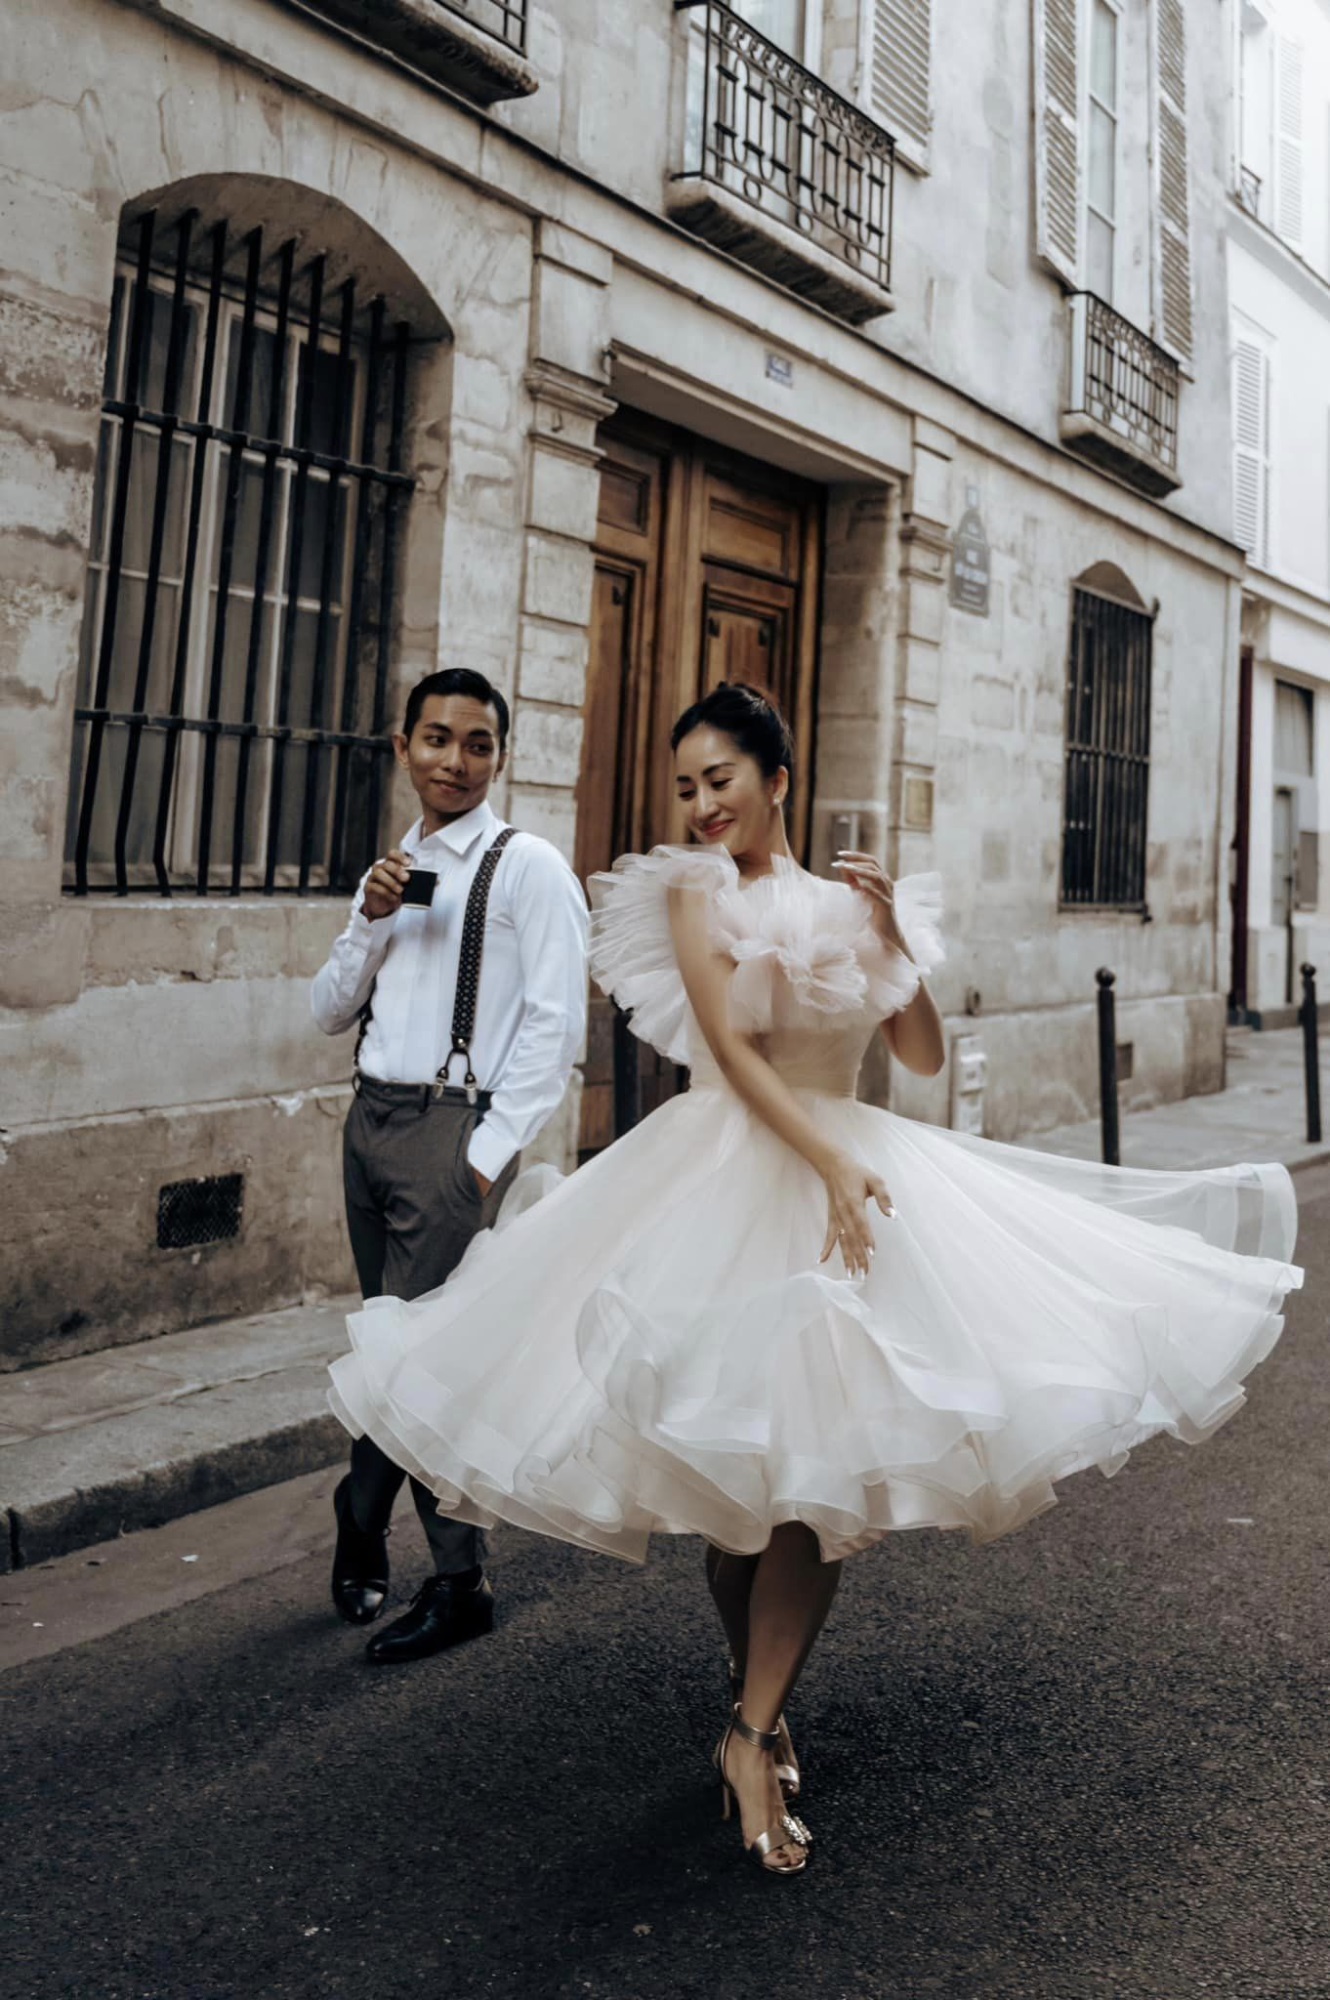 Phan Hiển và Khánh Thi tái hiện chuyện tình yêu gắn liền với nhảy múa trong bộ ảnh cưới chụp ở Pháp - Ảnh 3